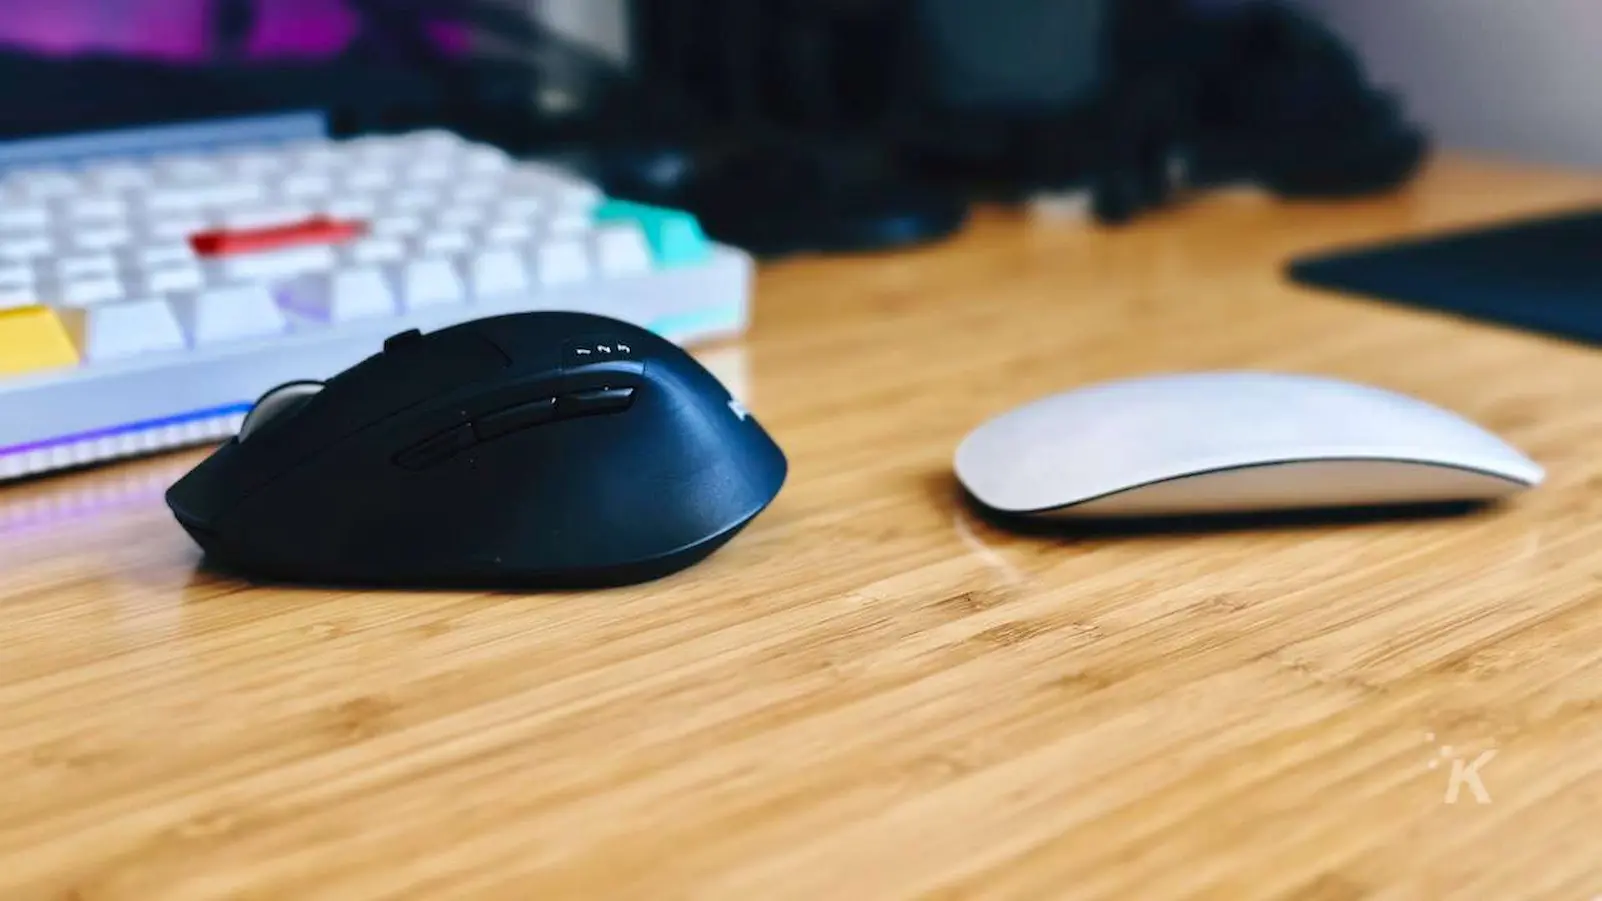 Nebeneinander Bild von Apple Magic Mouse vs. Logitech M720 Maus auf dem Schreibtisch